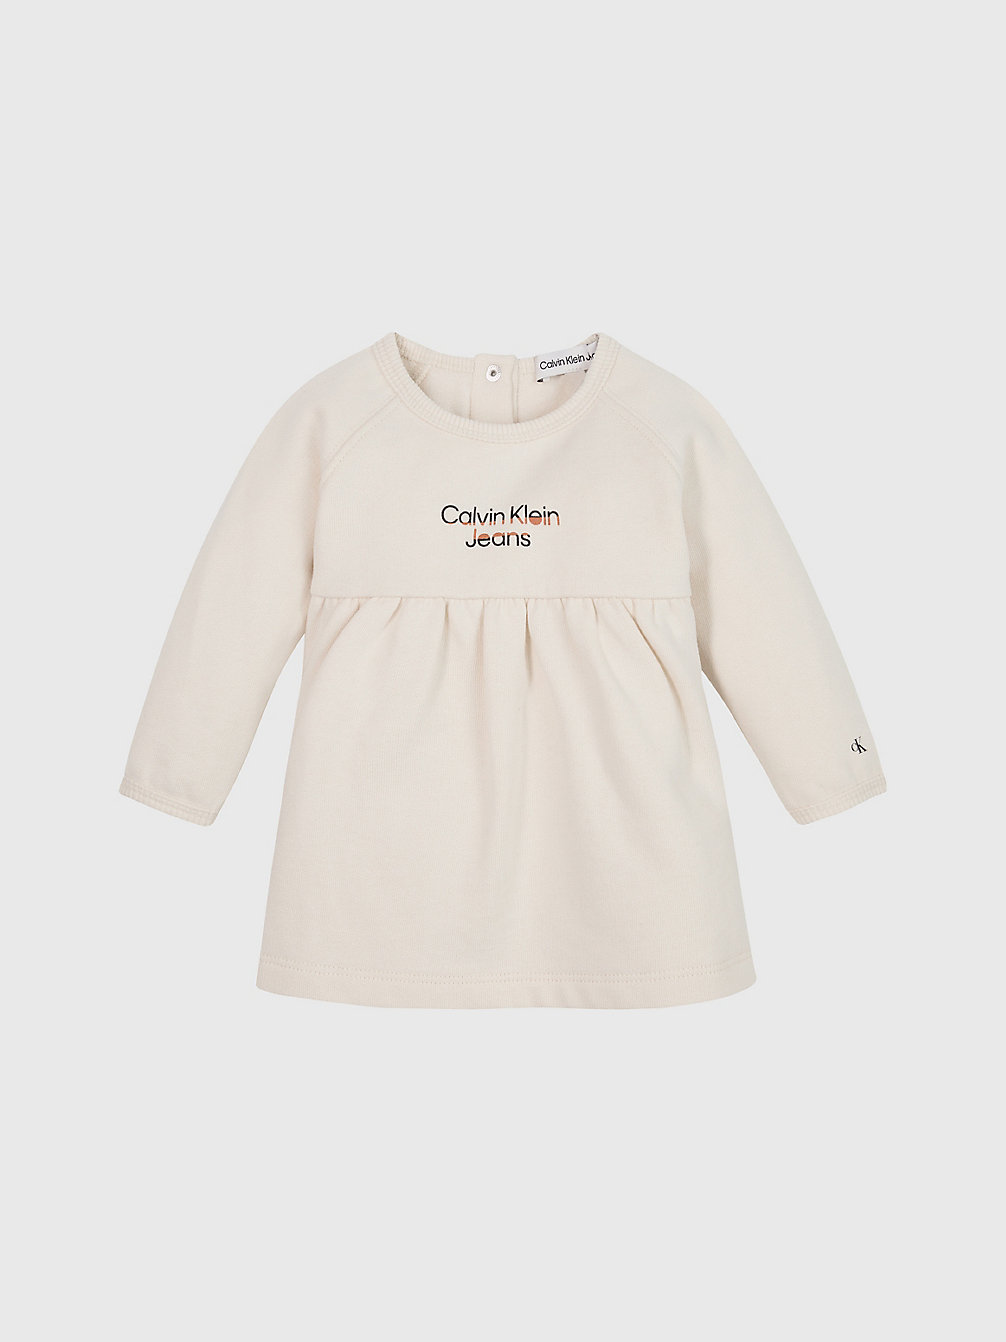 WHITECAP GRAY Newborn Fleece Logo Dress undefined undefined Calvin Klein